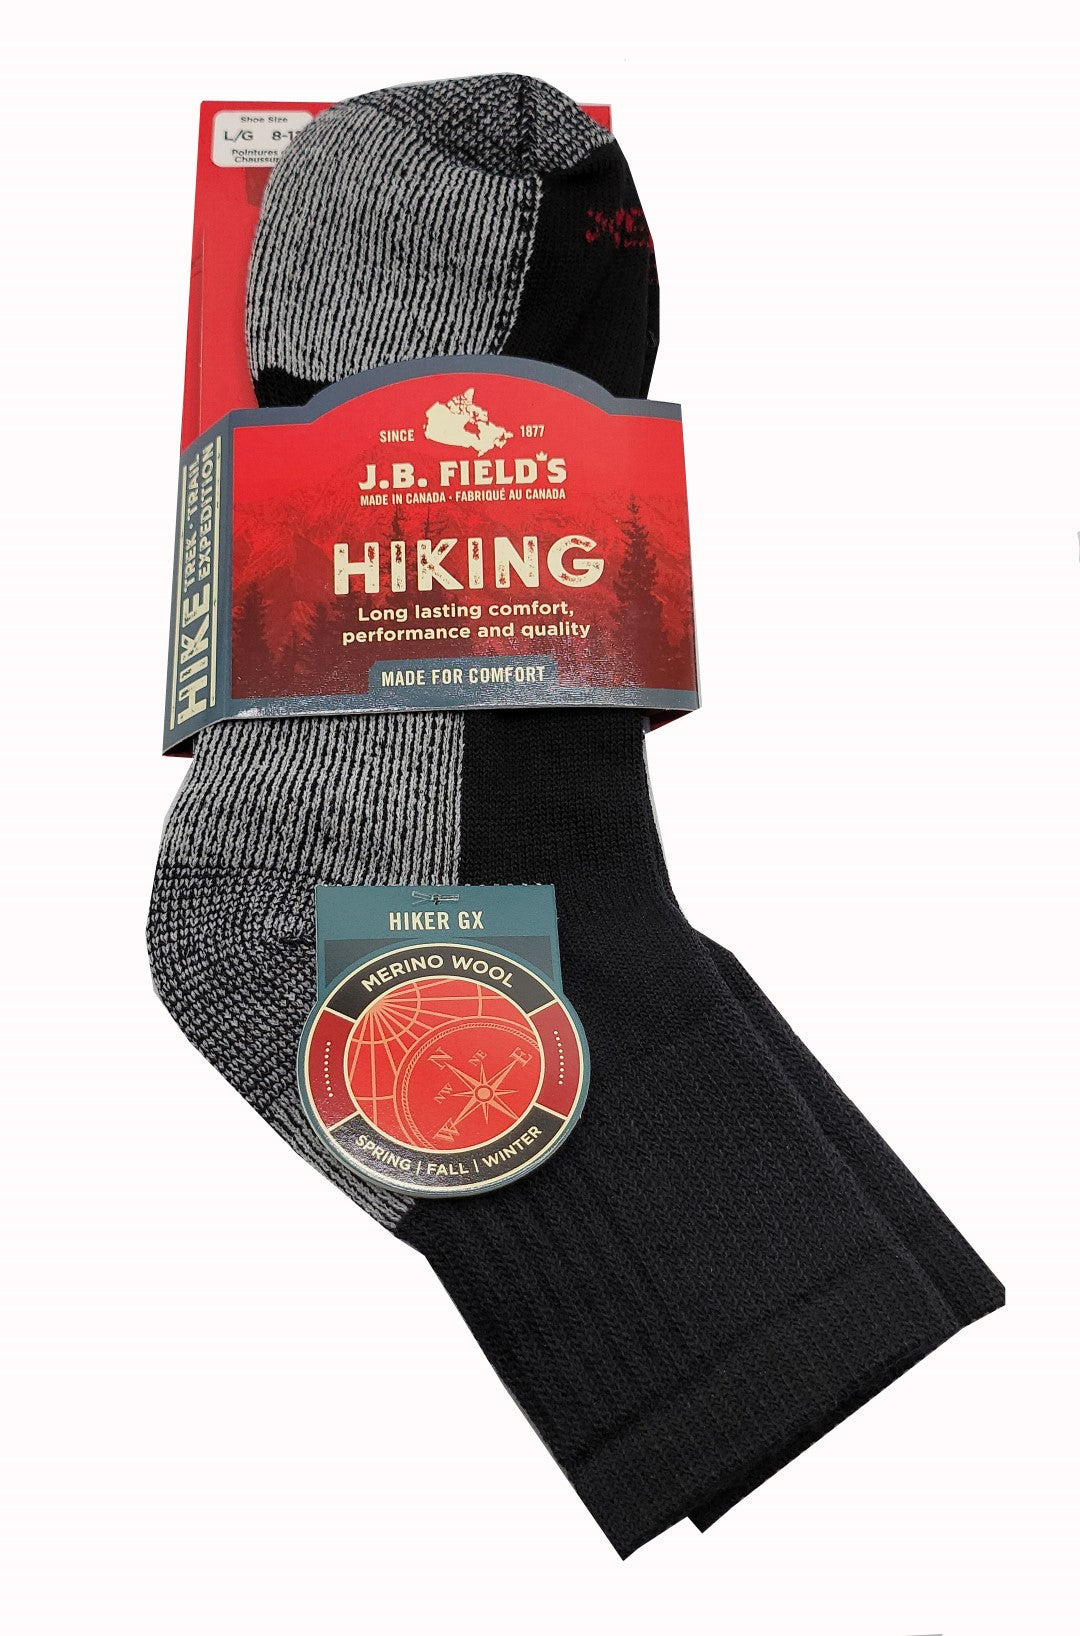 merino wool hiking ankle socks in black